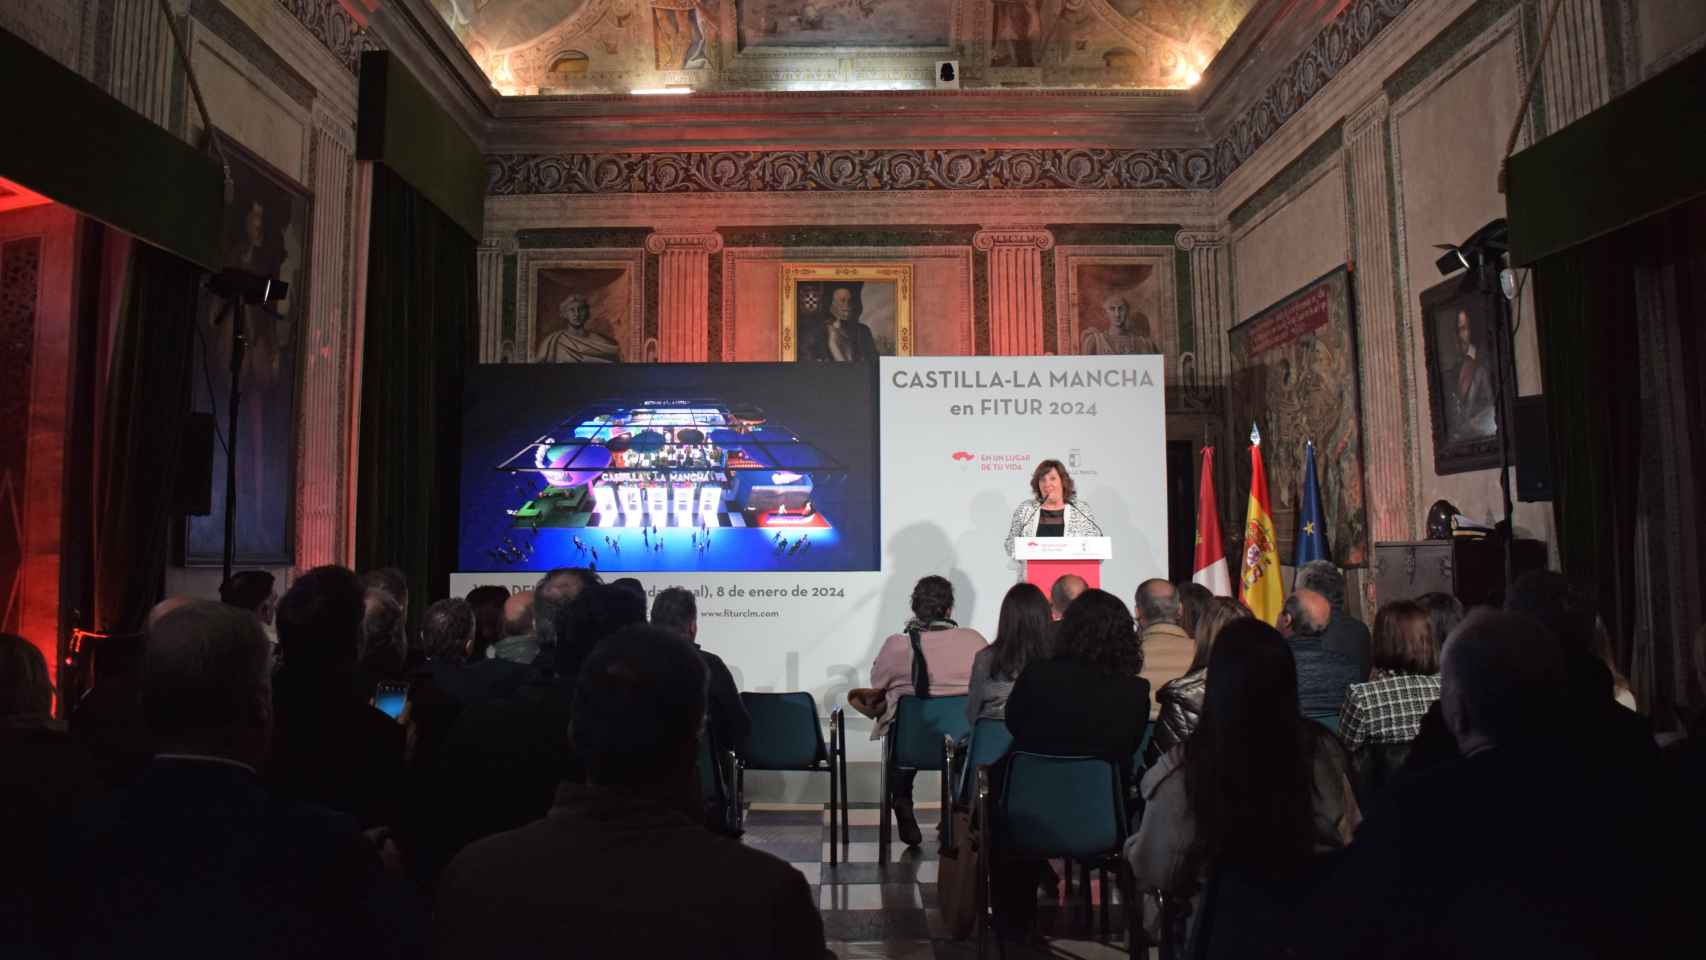 Presentación de la propuesta de Castilla-La Mancha para Fitur 2024. Foto: JCCM.